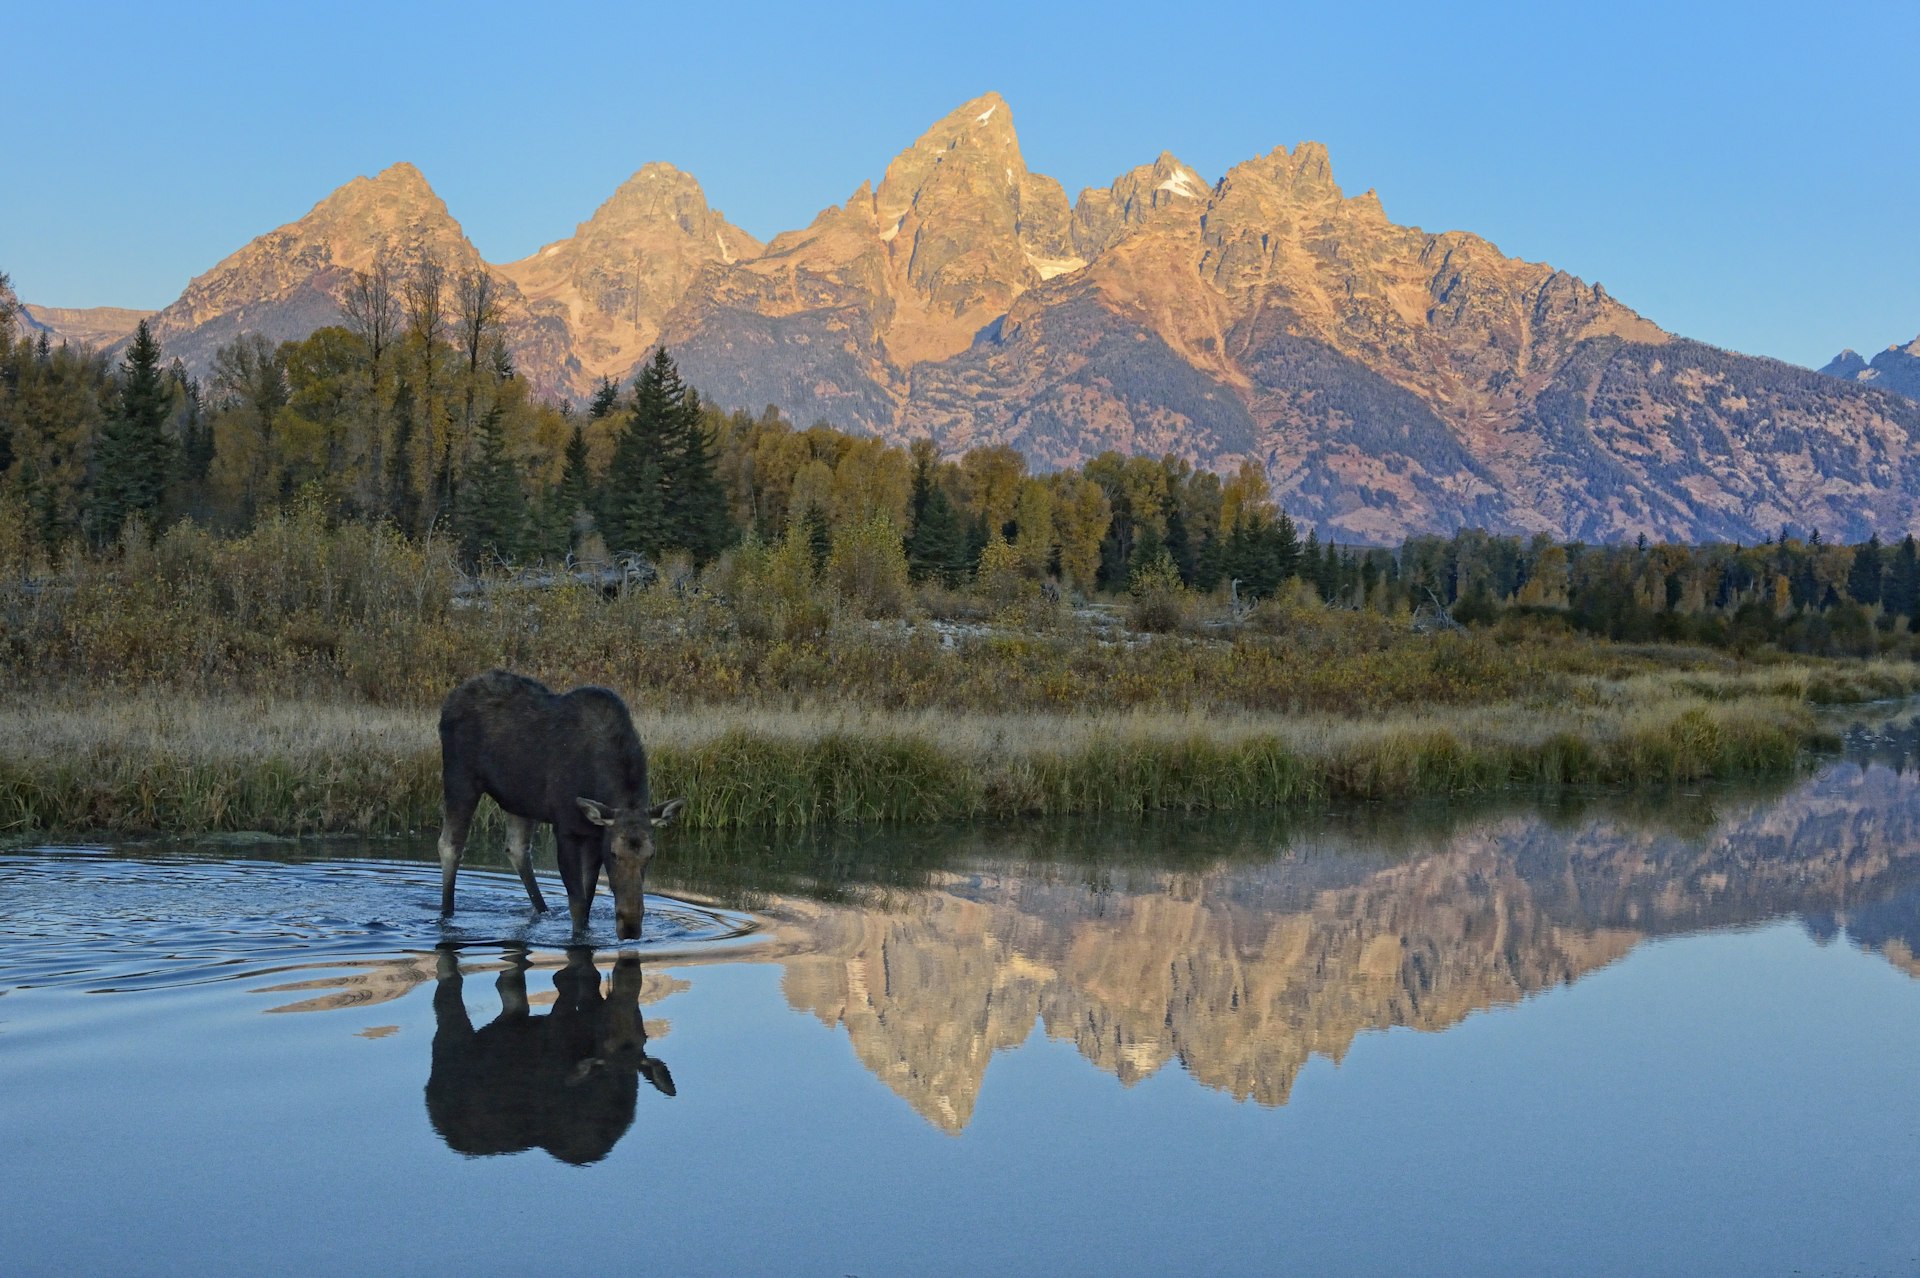 500px Photo ID: 61487323 - Moose Drinking at Sunrise, Tetons, Wyoming